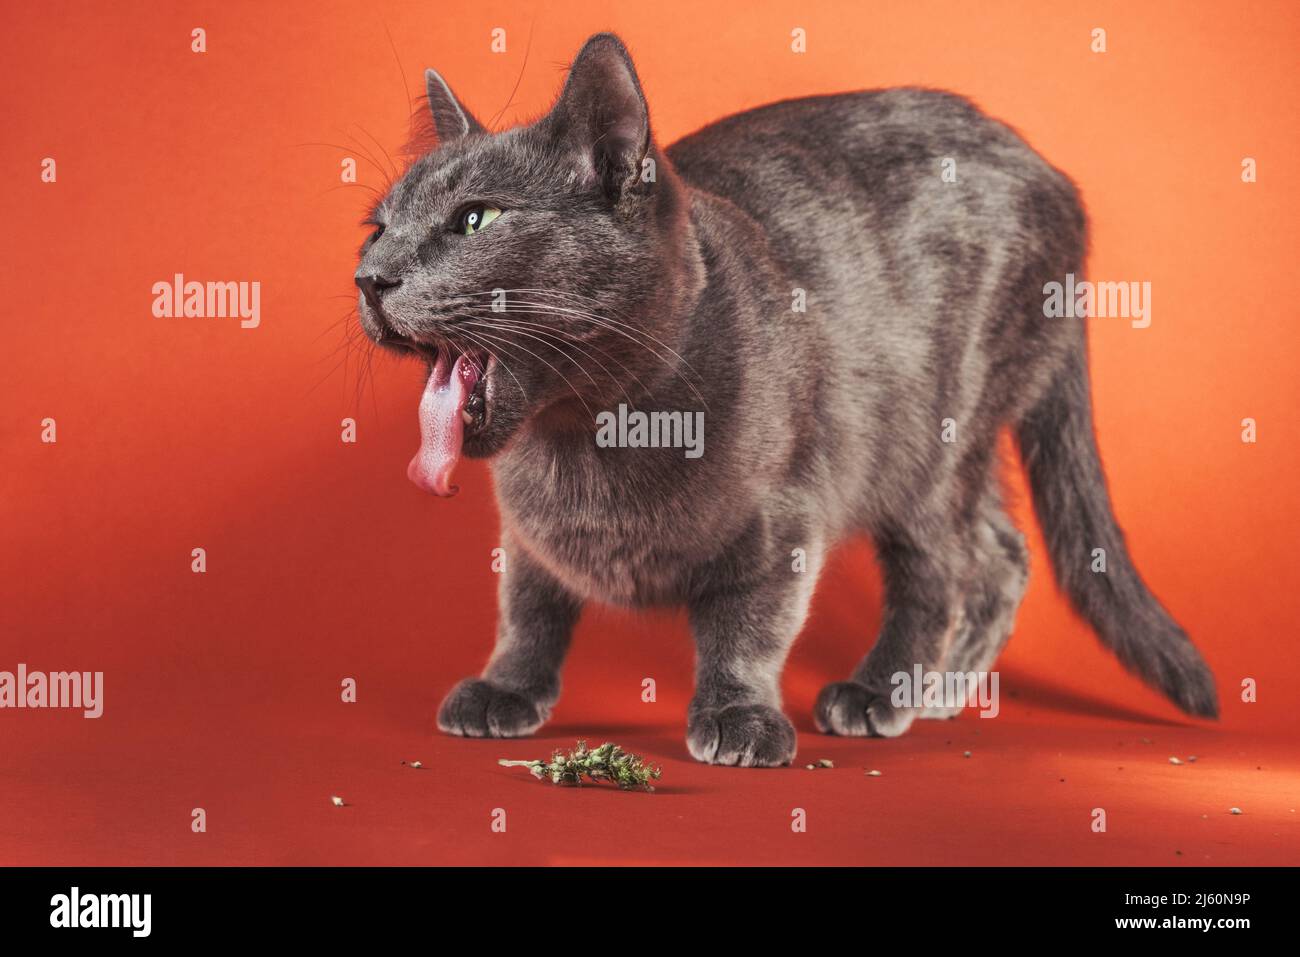 Ritratto di un gatto grigio in studio a corpo intero con lingua completamente estesa mentre si mangia la catnip. Foto Stock